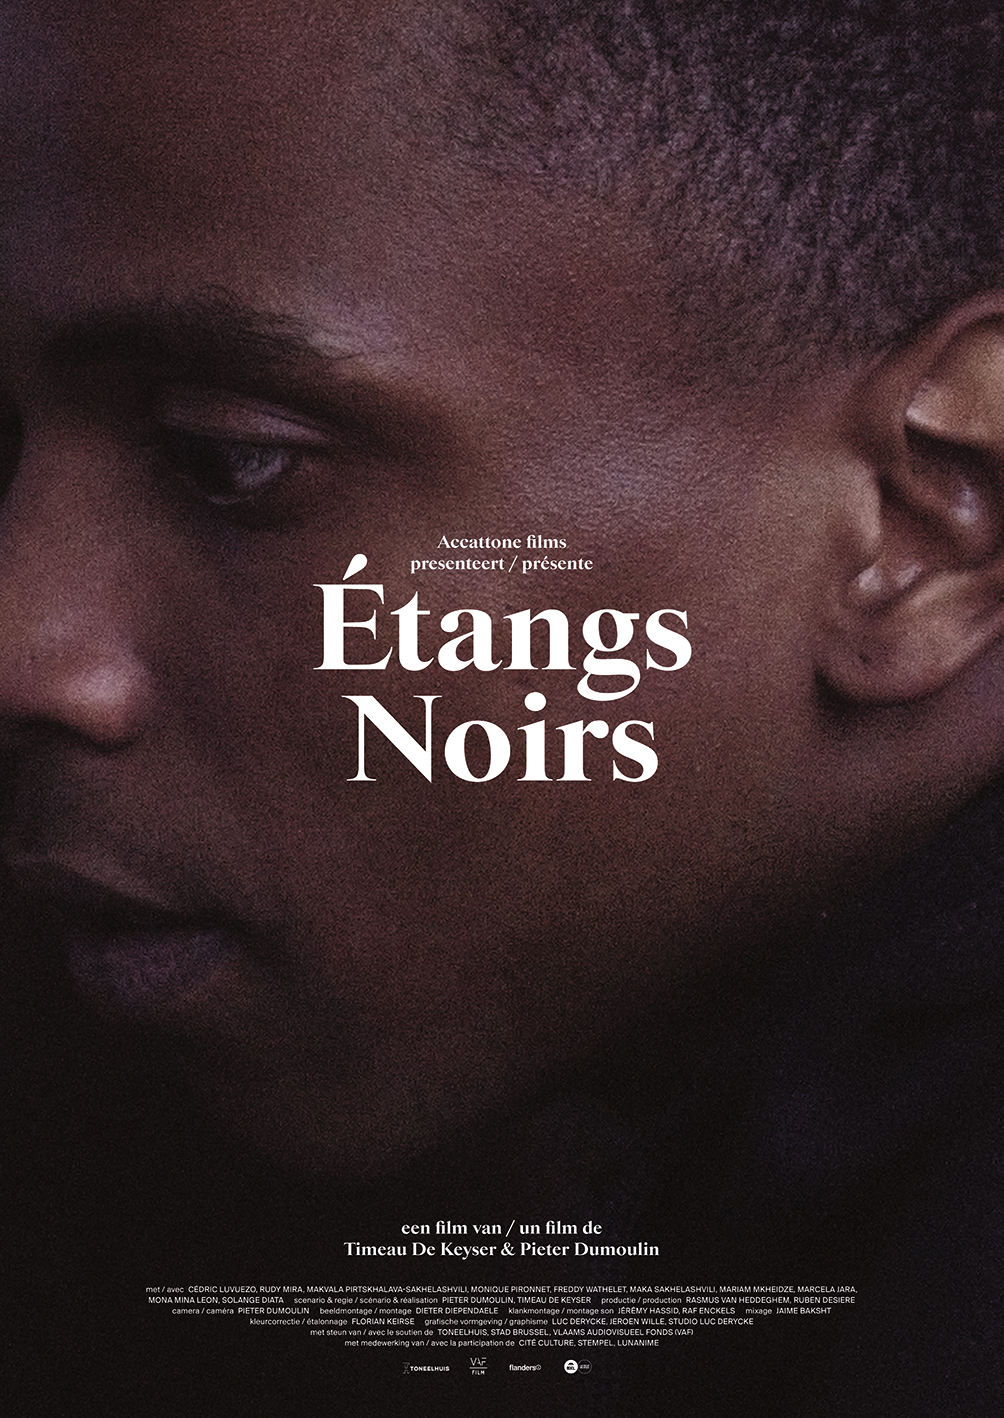 Étangs Noirs (Timeau De Keyser & Pieter Dumoulin, 2018)